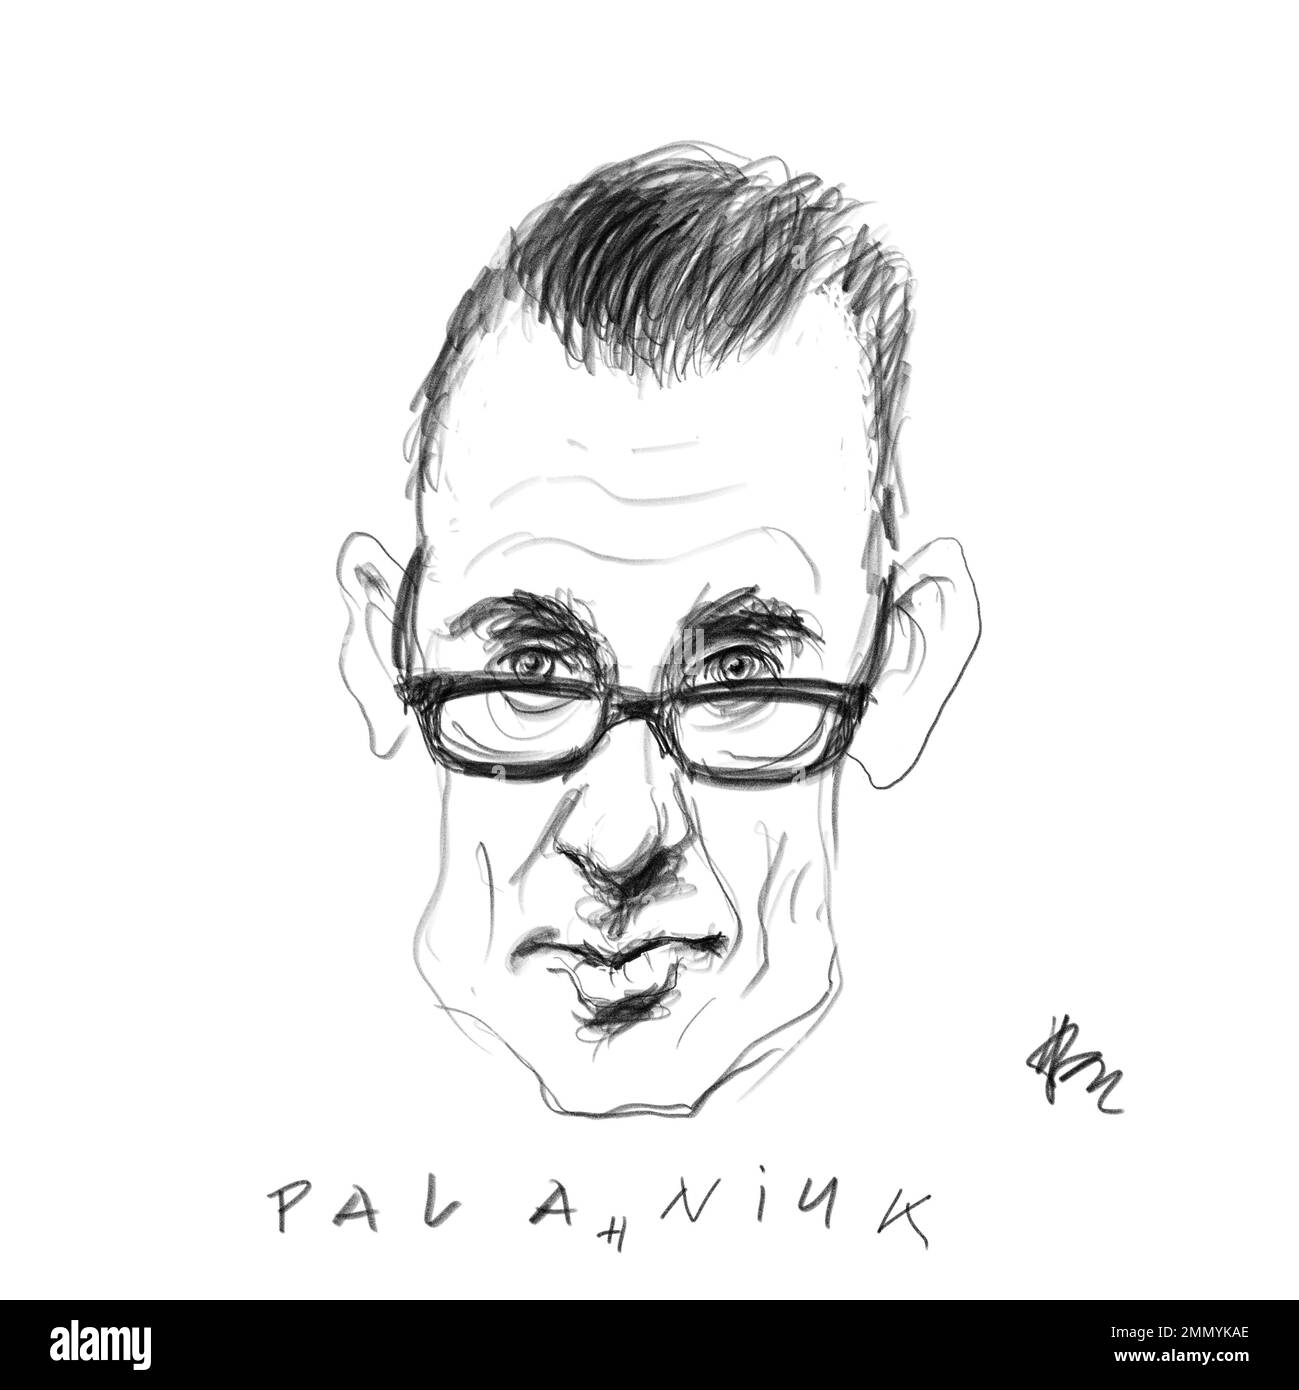 Ritratto dell'autore Palahniuk Foto Stock